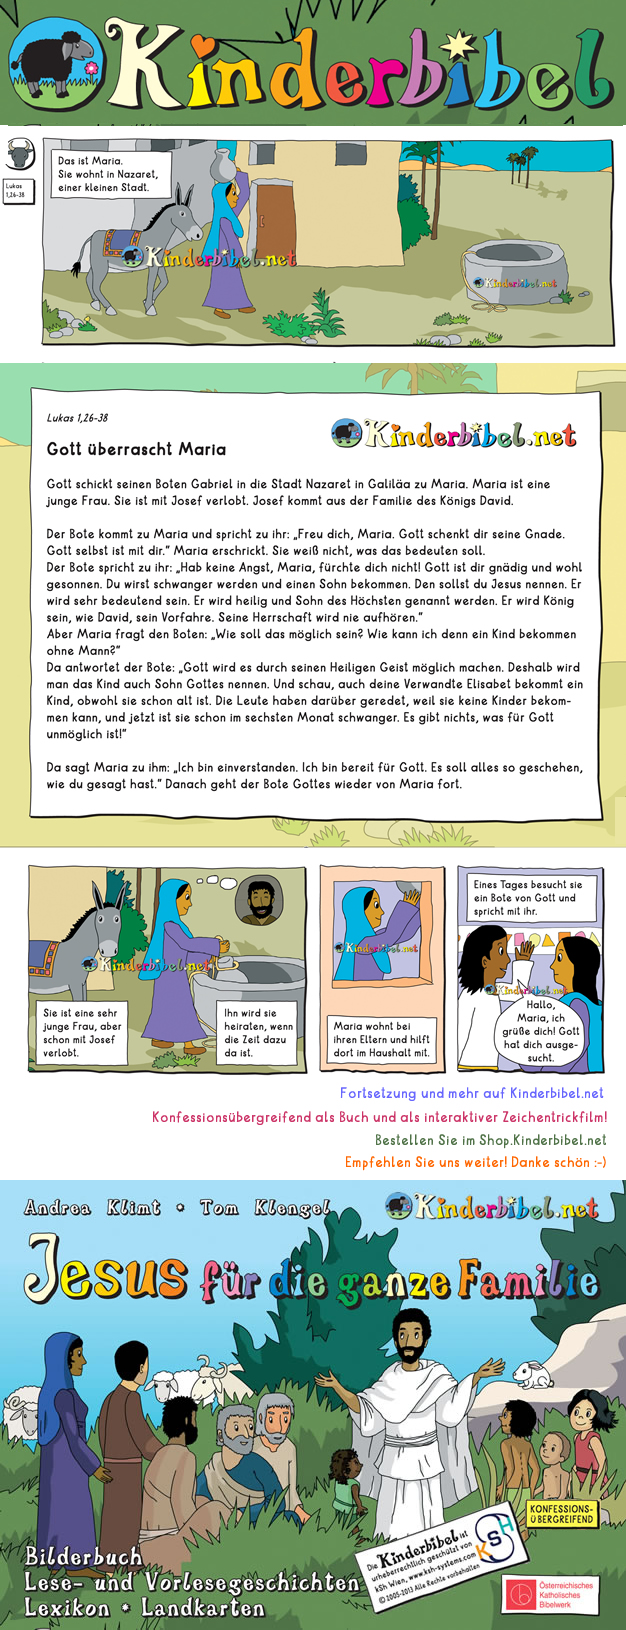 Gratis Bibel-Leseangebot der Kinderbibel.net online